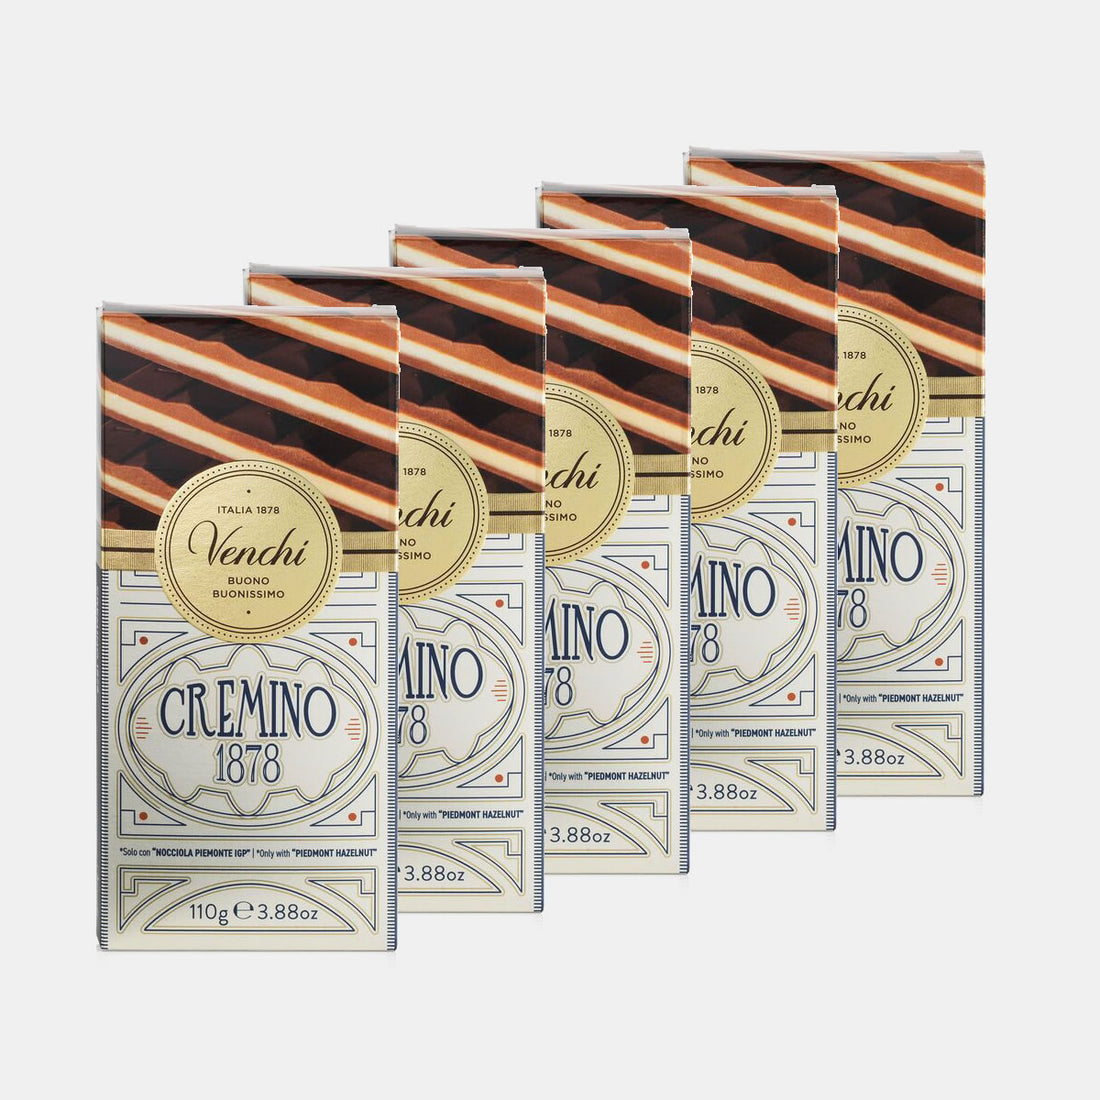 Pack of 5 Cremino 1878 bars